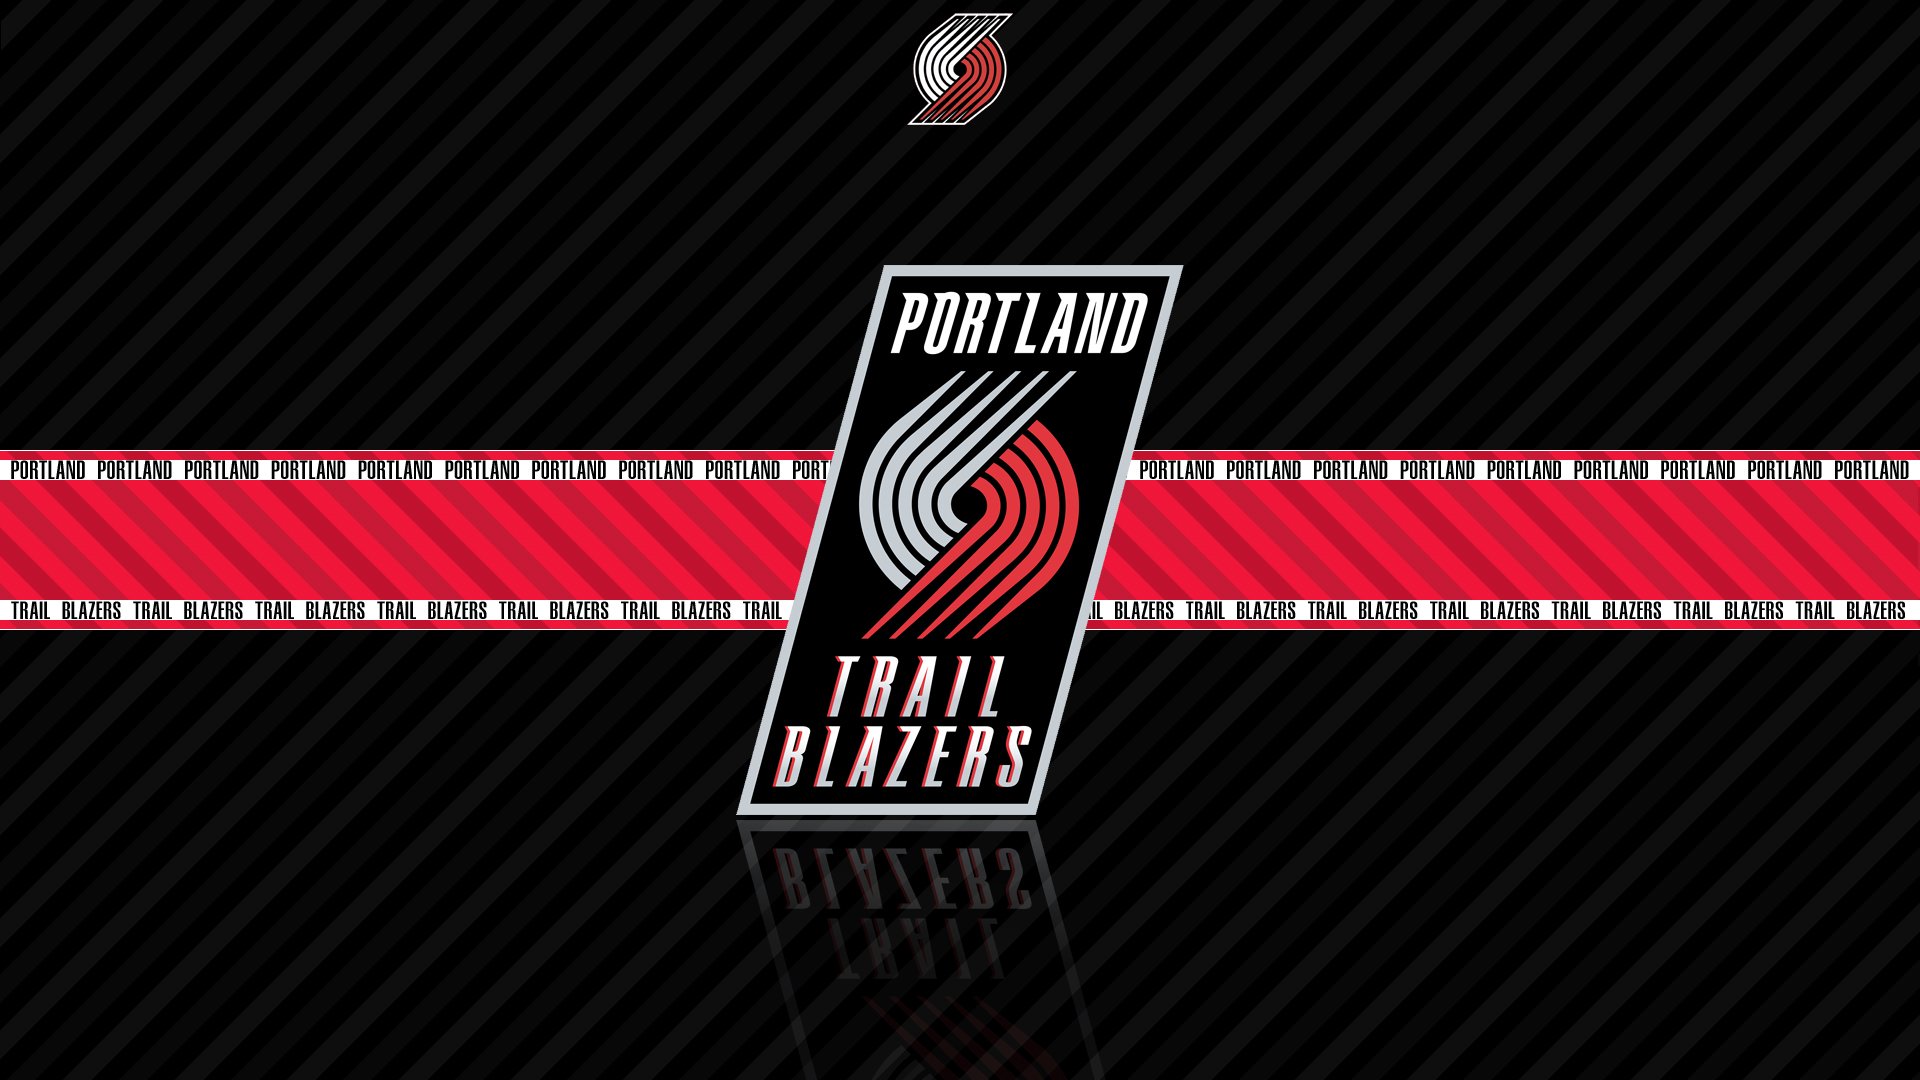 iPhone wallpaper  Portland trailblazers Blazers basketball Trail blazers